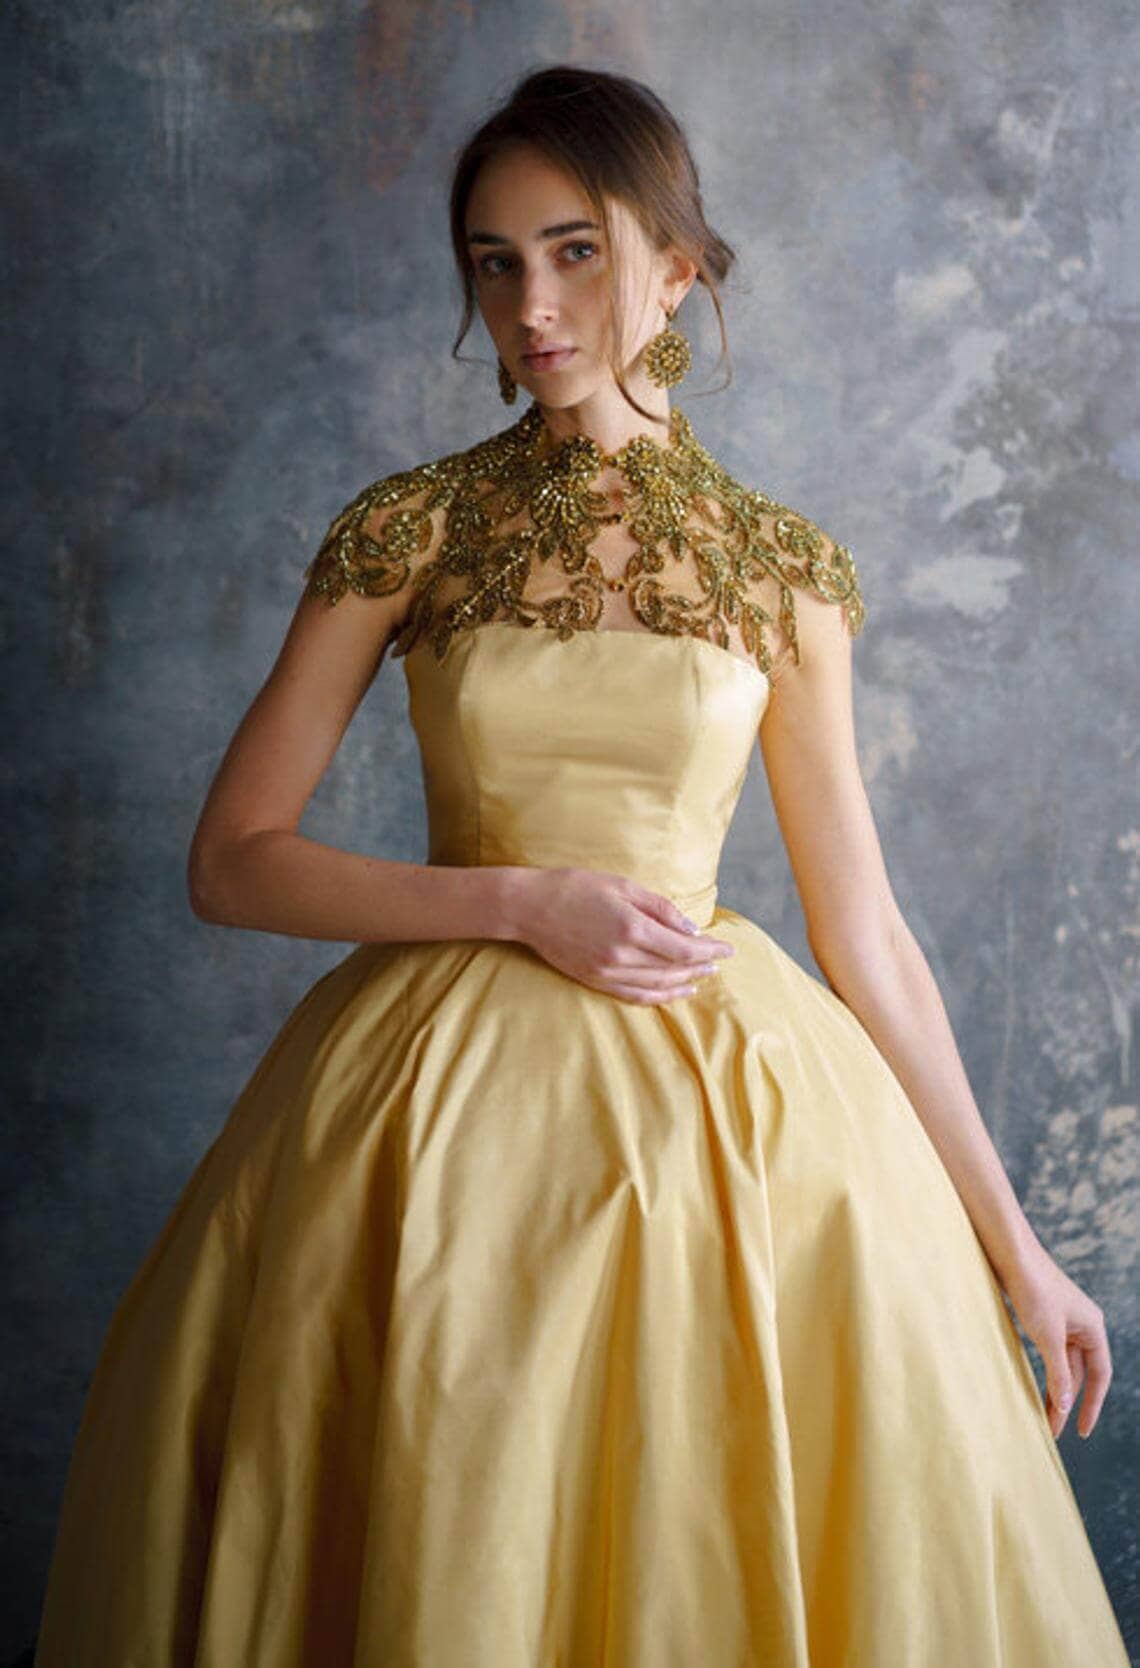 Girl wearing gold wedding dress